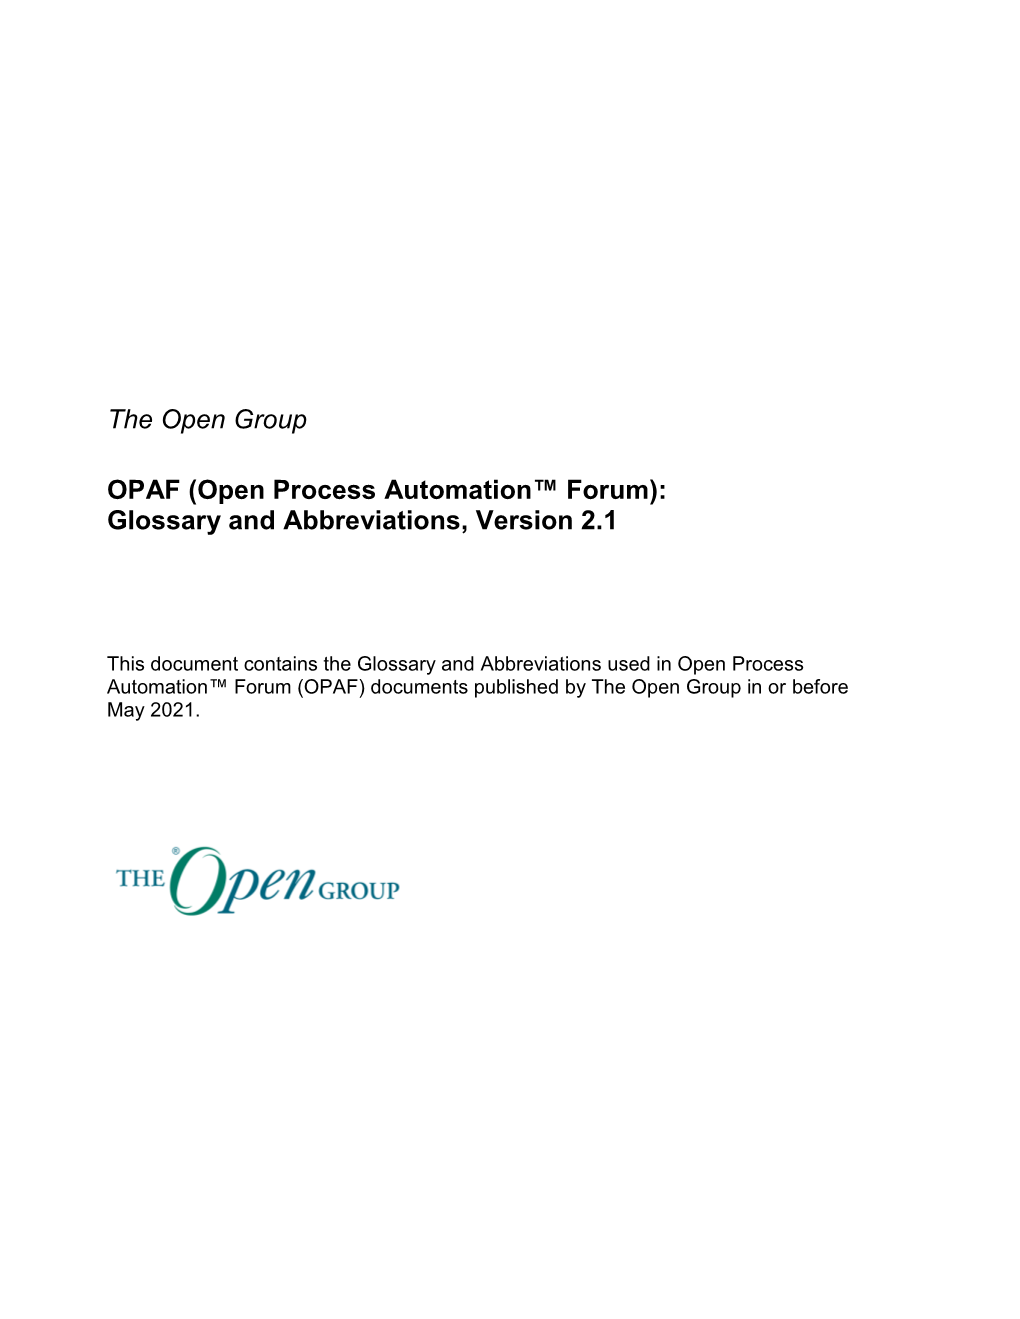 OPAF Glossary & Abbreviations, Version 2.1